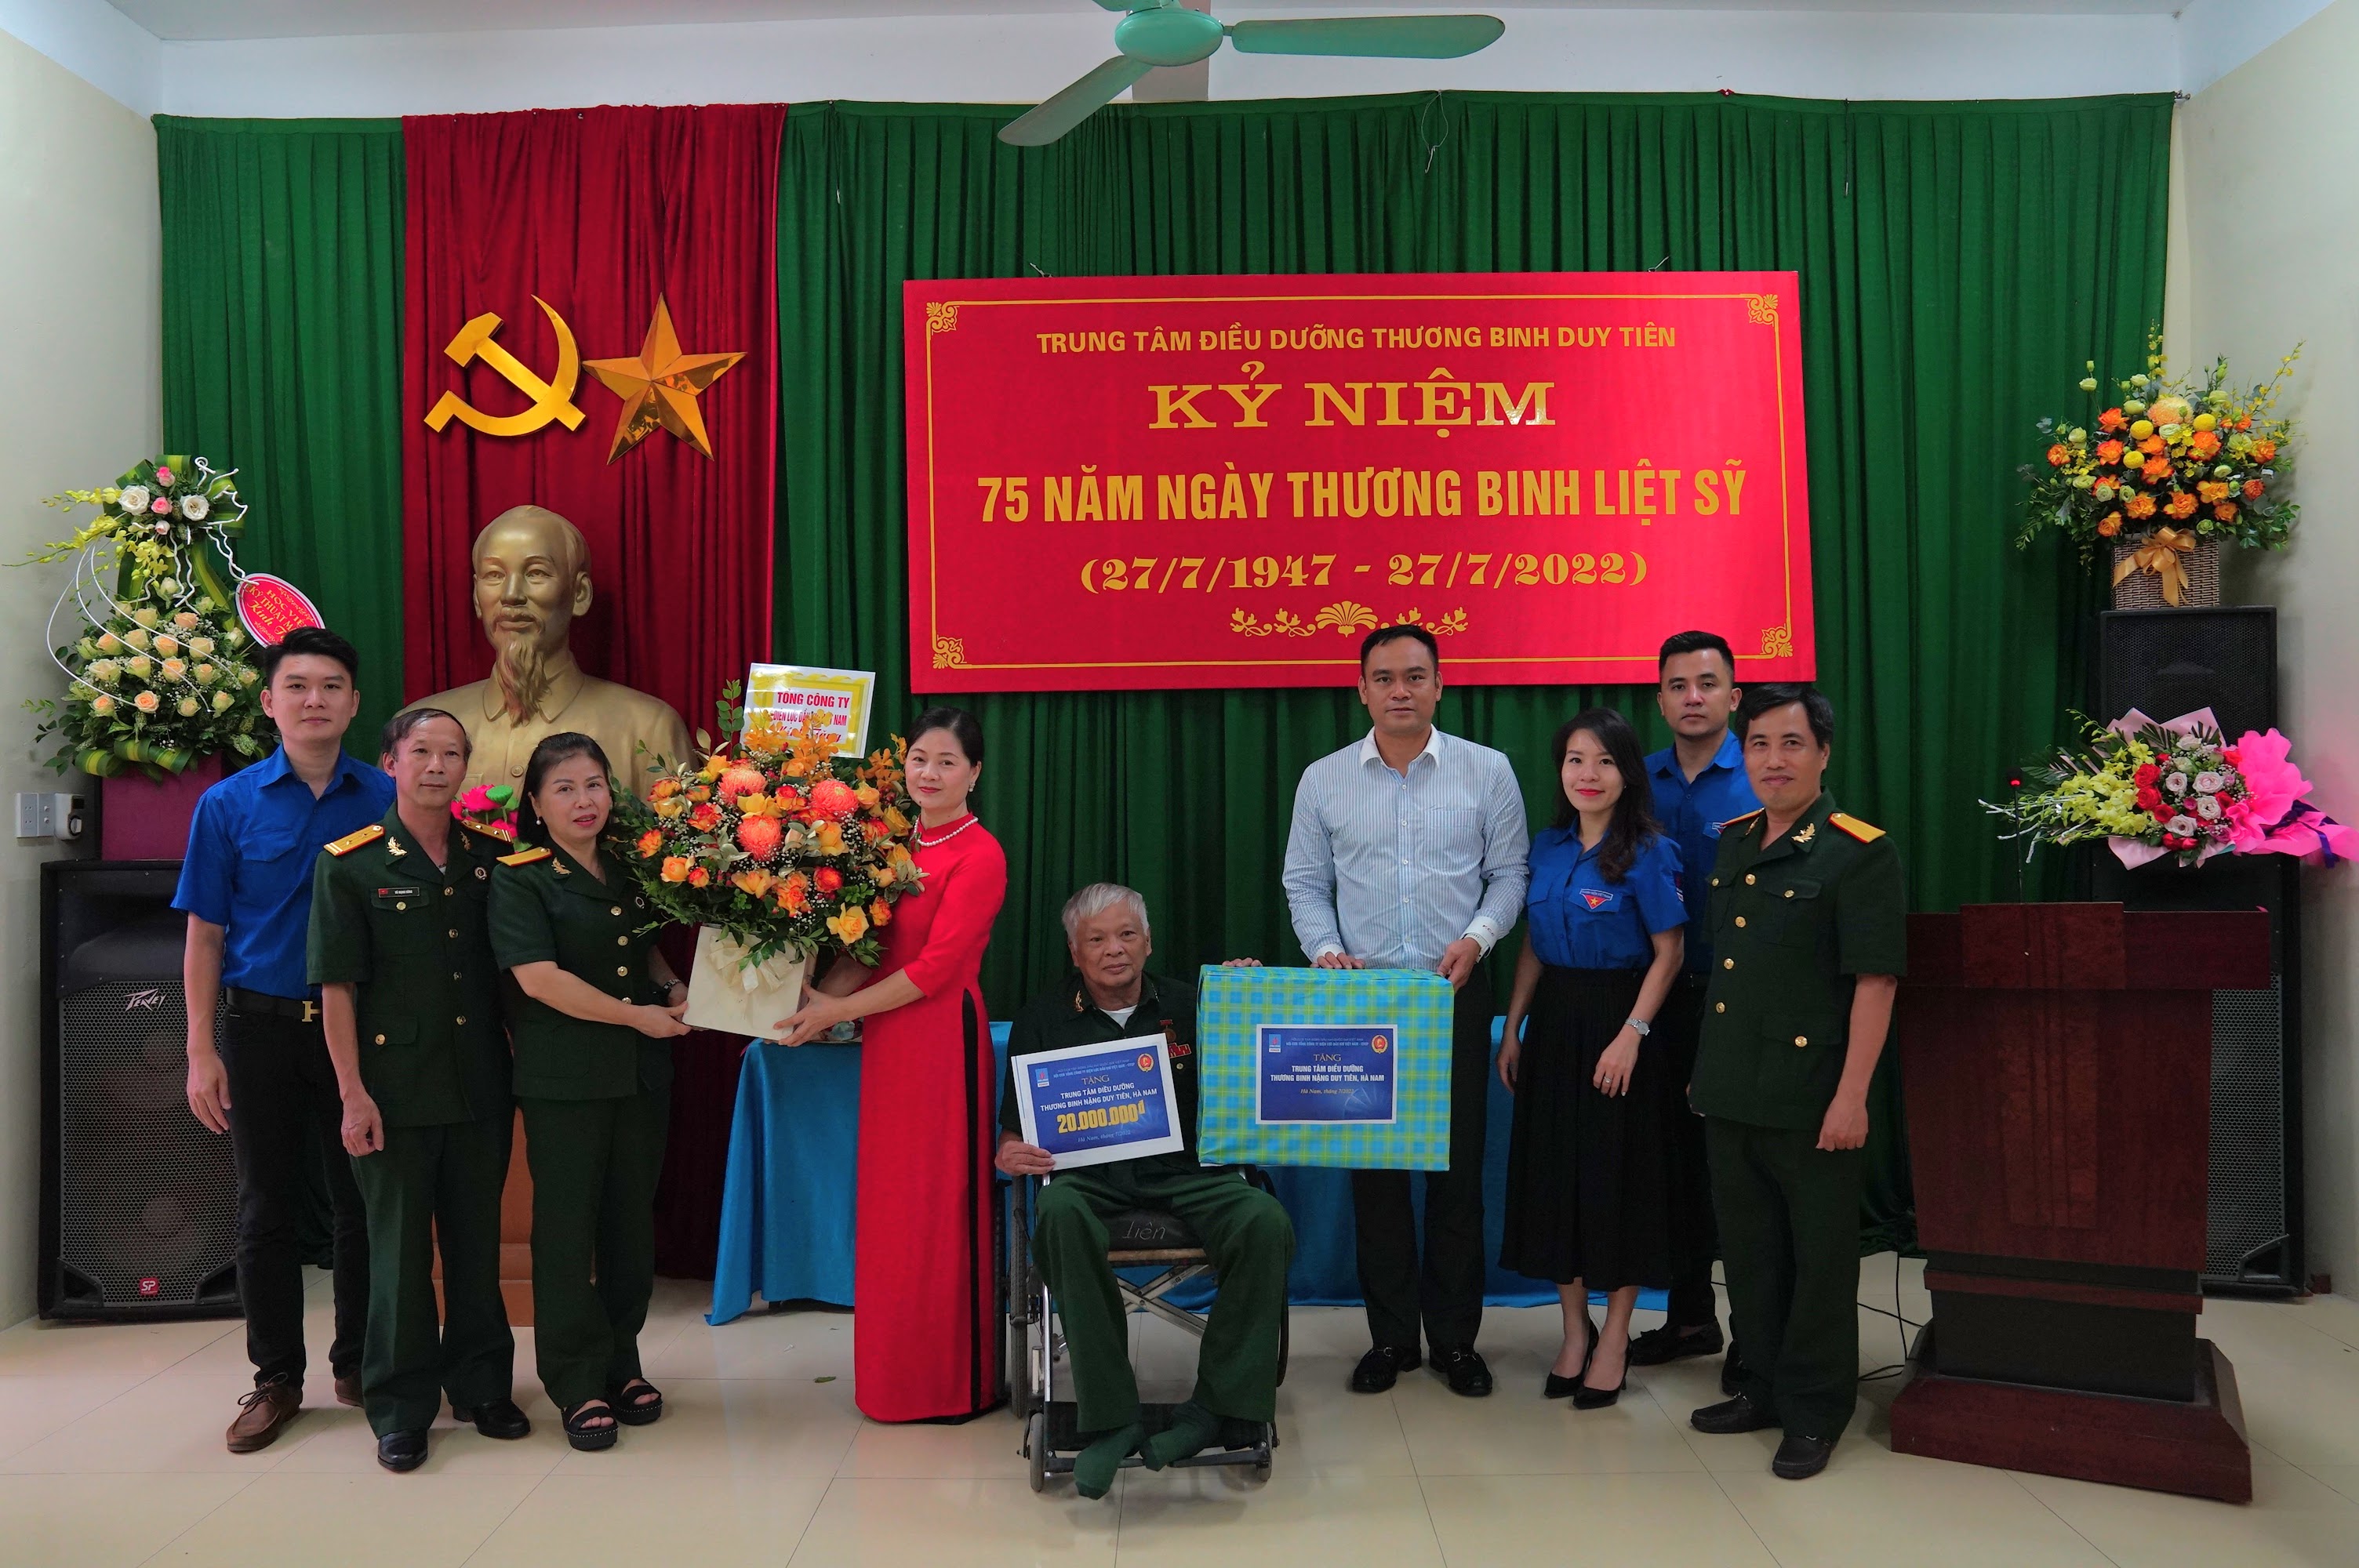 PV Power tổ chức thăm hỏi và tặng quà các thương bệnh binh nặng tại Trung tâm điều dưỡng thương binh nặng Duy Tiên - Hà Nam